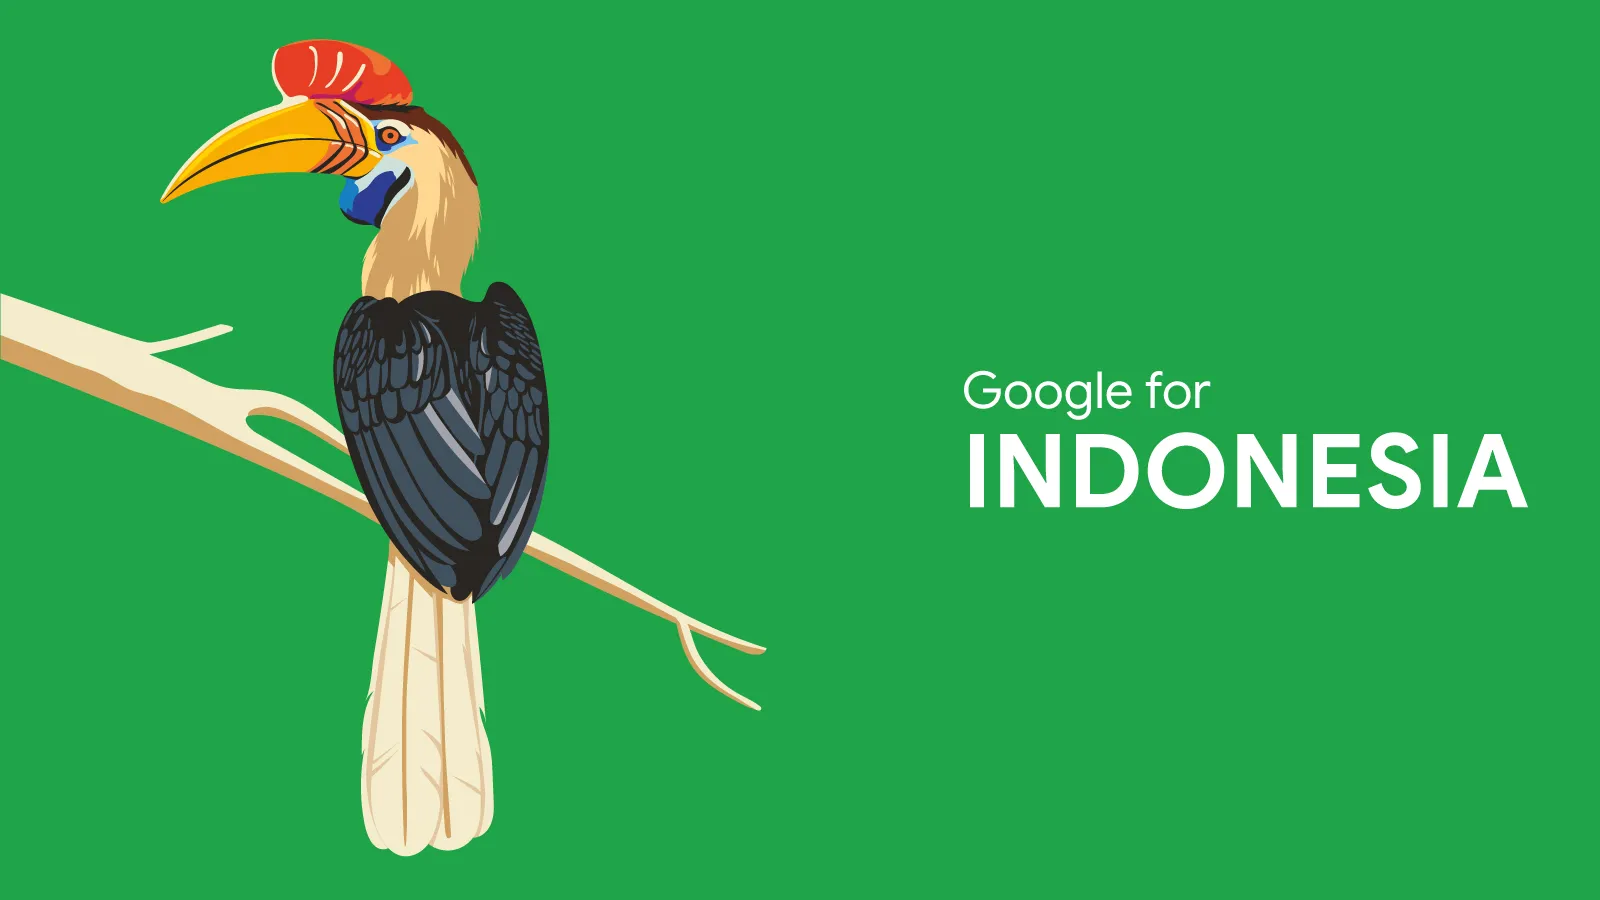 #Google4ID Inisiasi Google Bantu Indonesia Bangkit di Tengah Pandemi